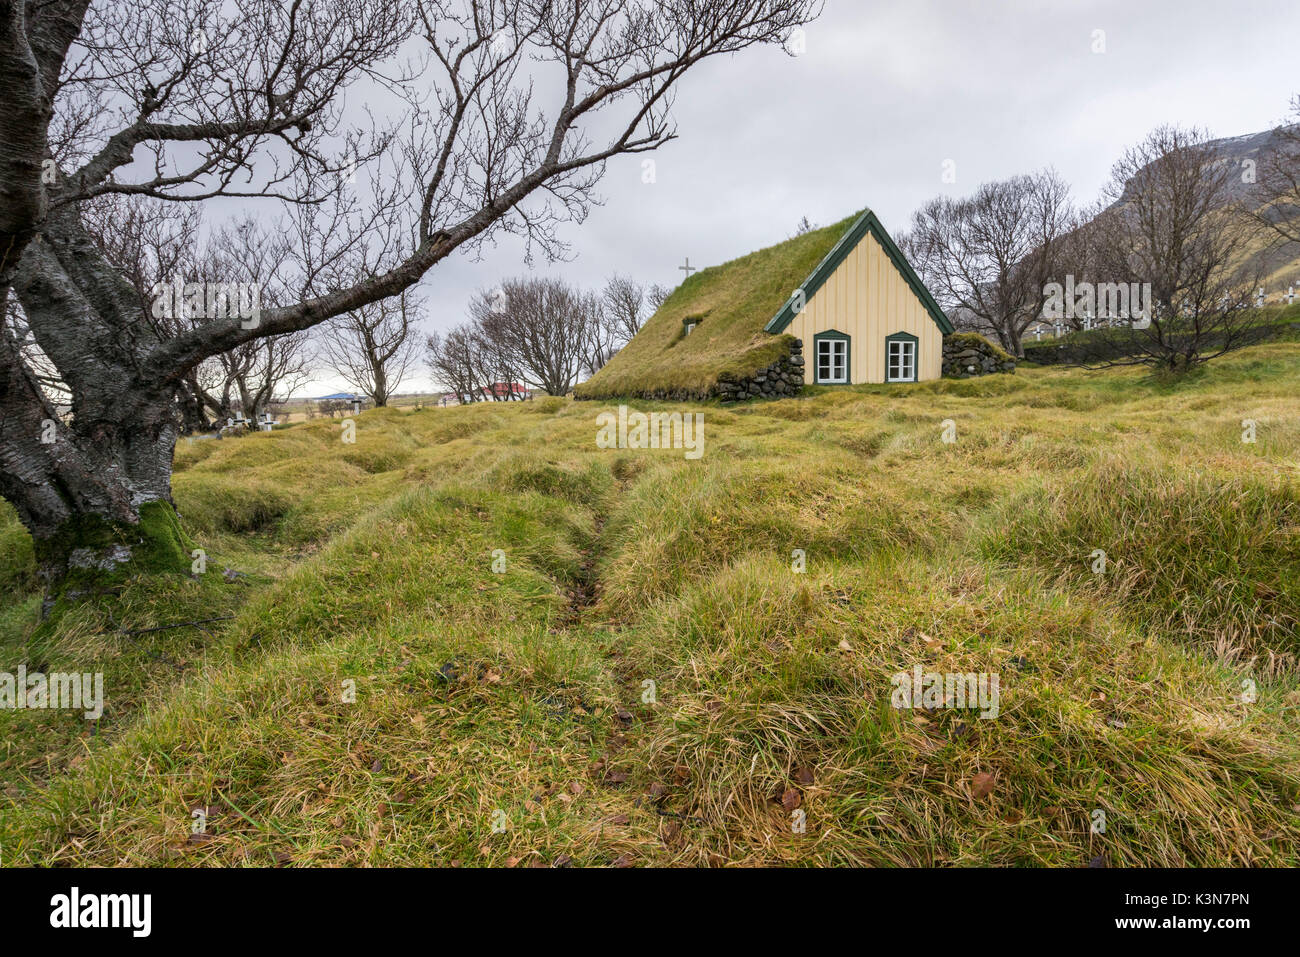 Tipica casa di tappeto erboso, 'torfbaeir' in islandese. L'Islanda, Europa Foto Stock